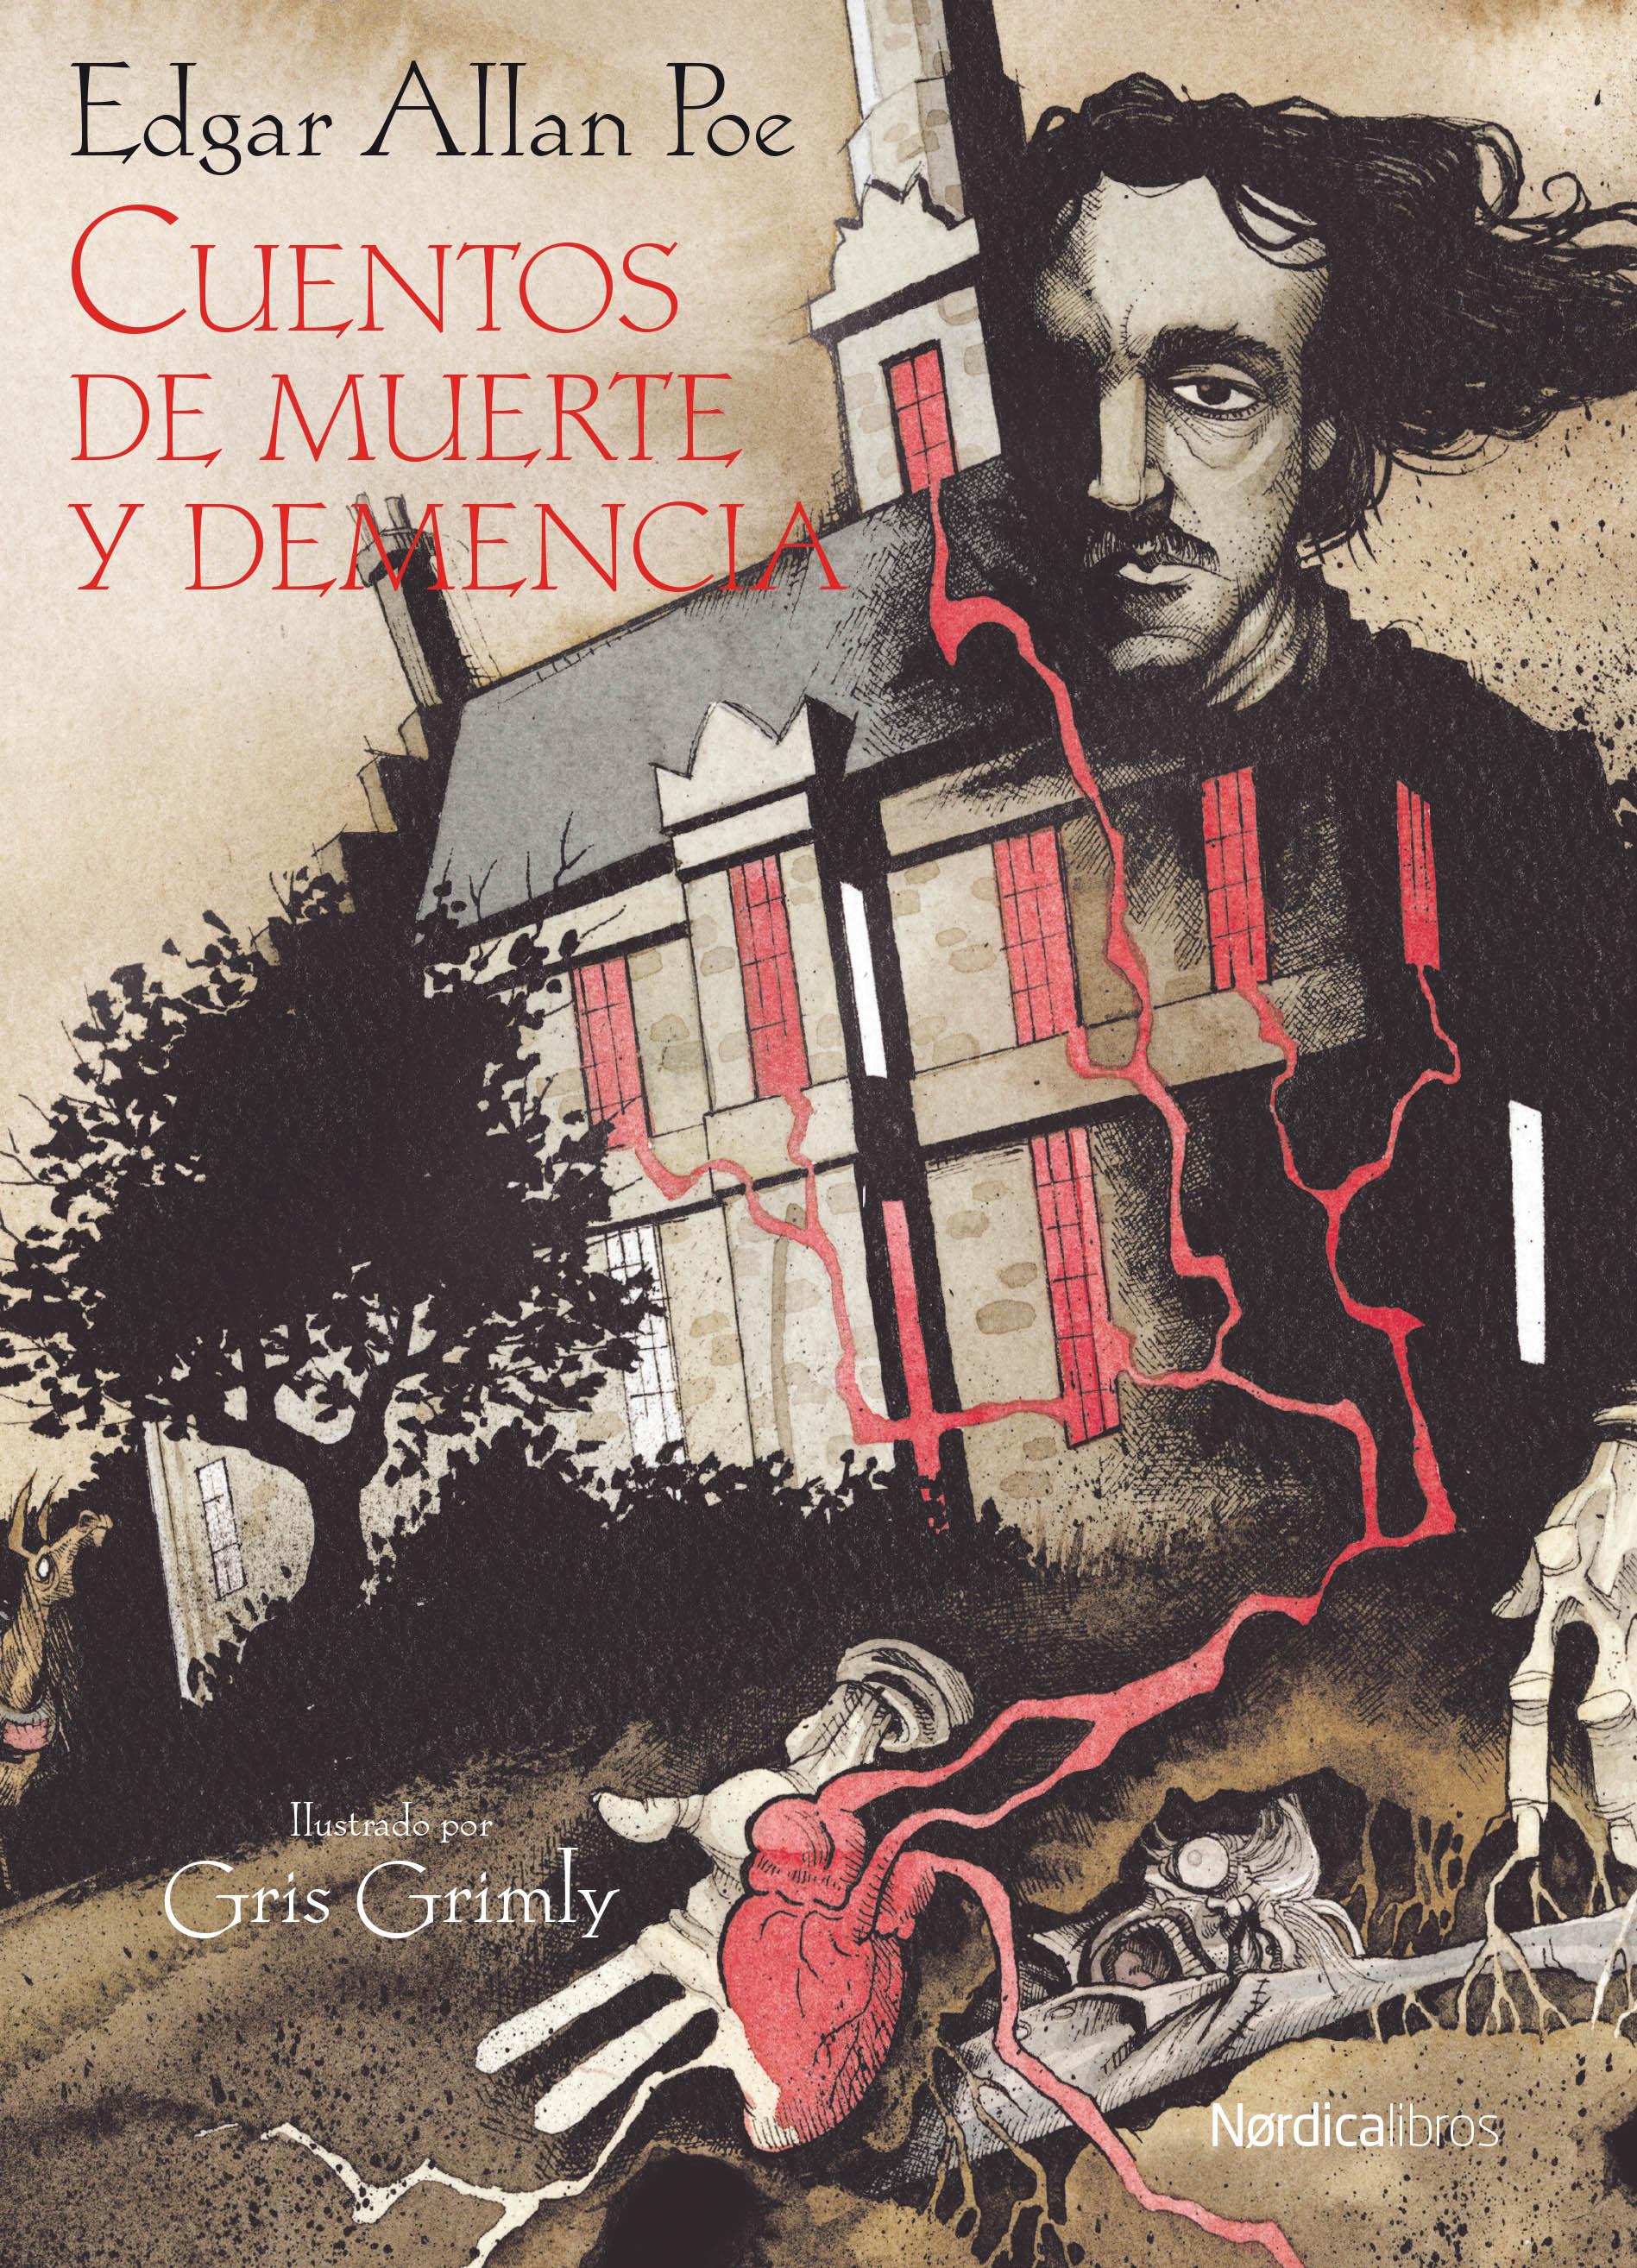 Una de libros ilustrados: “Cuentos de muerte y demencia” de Edgar Allan Poe  y “Ciencia Ficción. Poemas, artículos y novelas cortas” de Emilio Carrere.  | Lectura y Locura